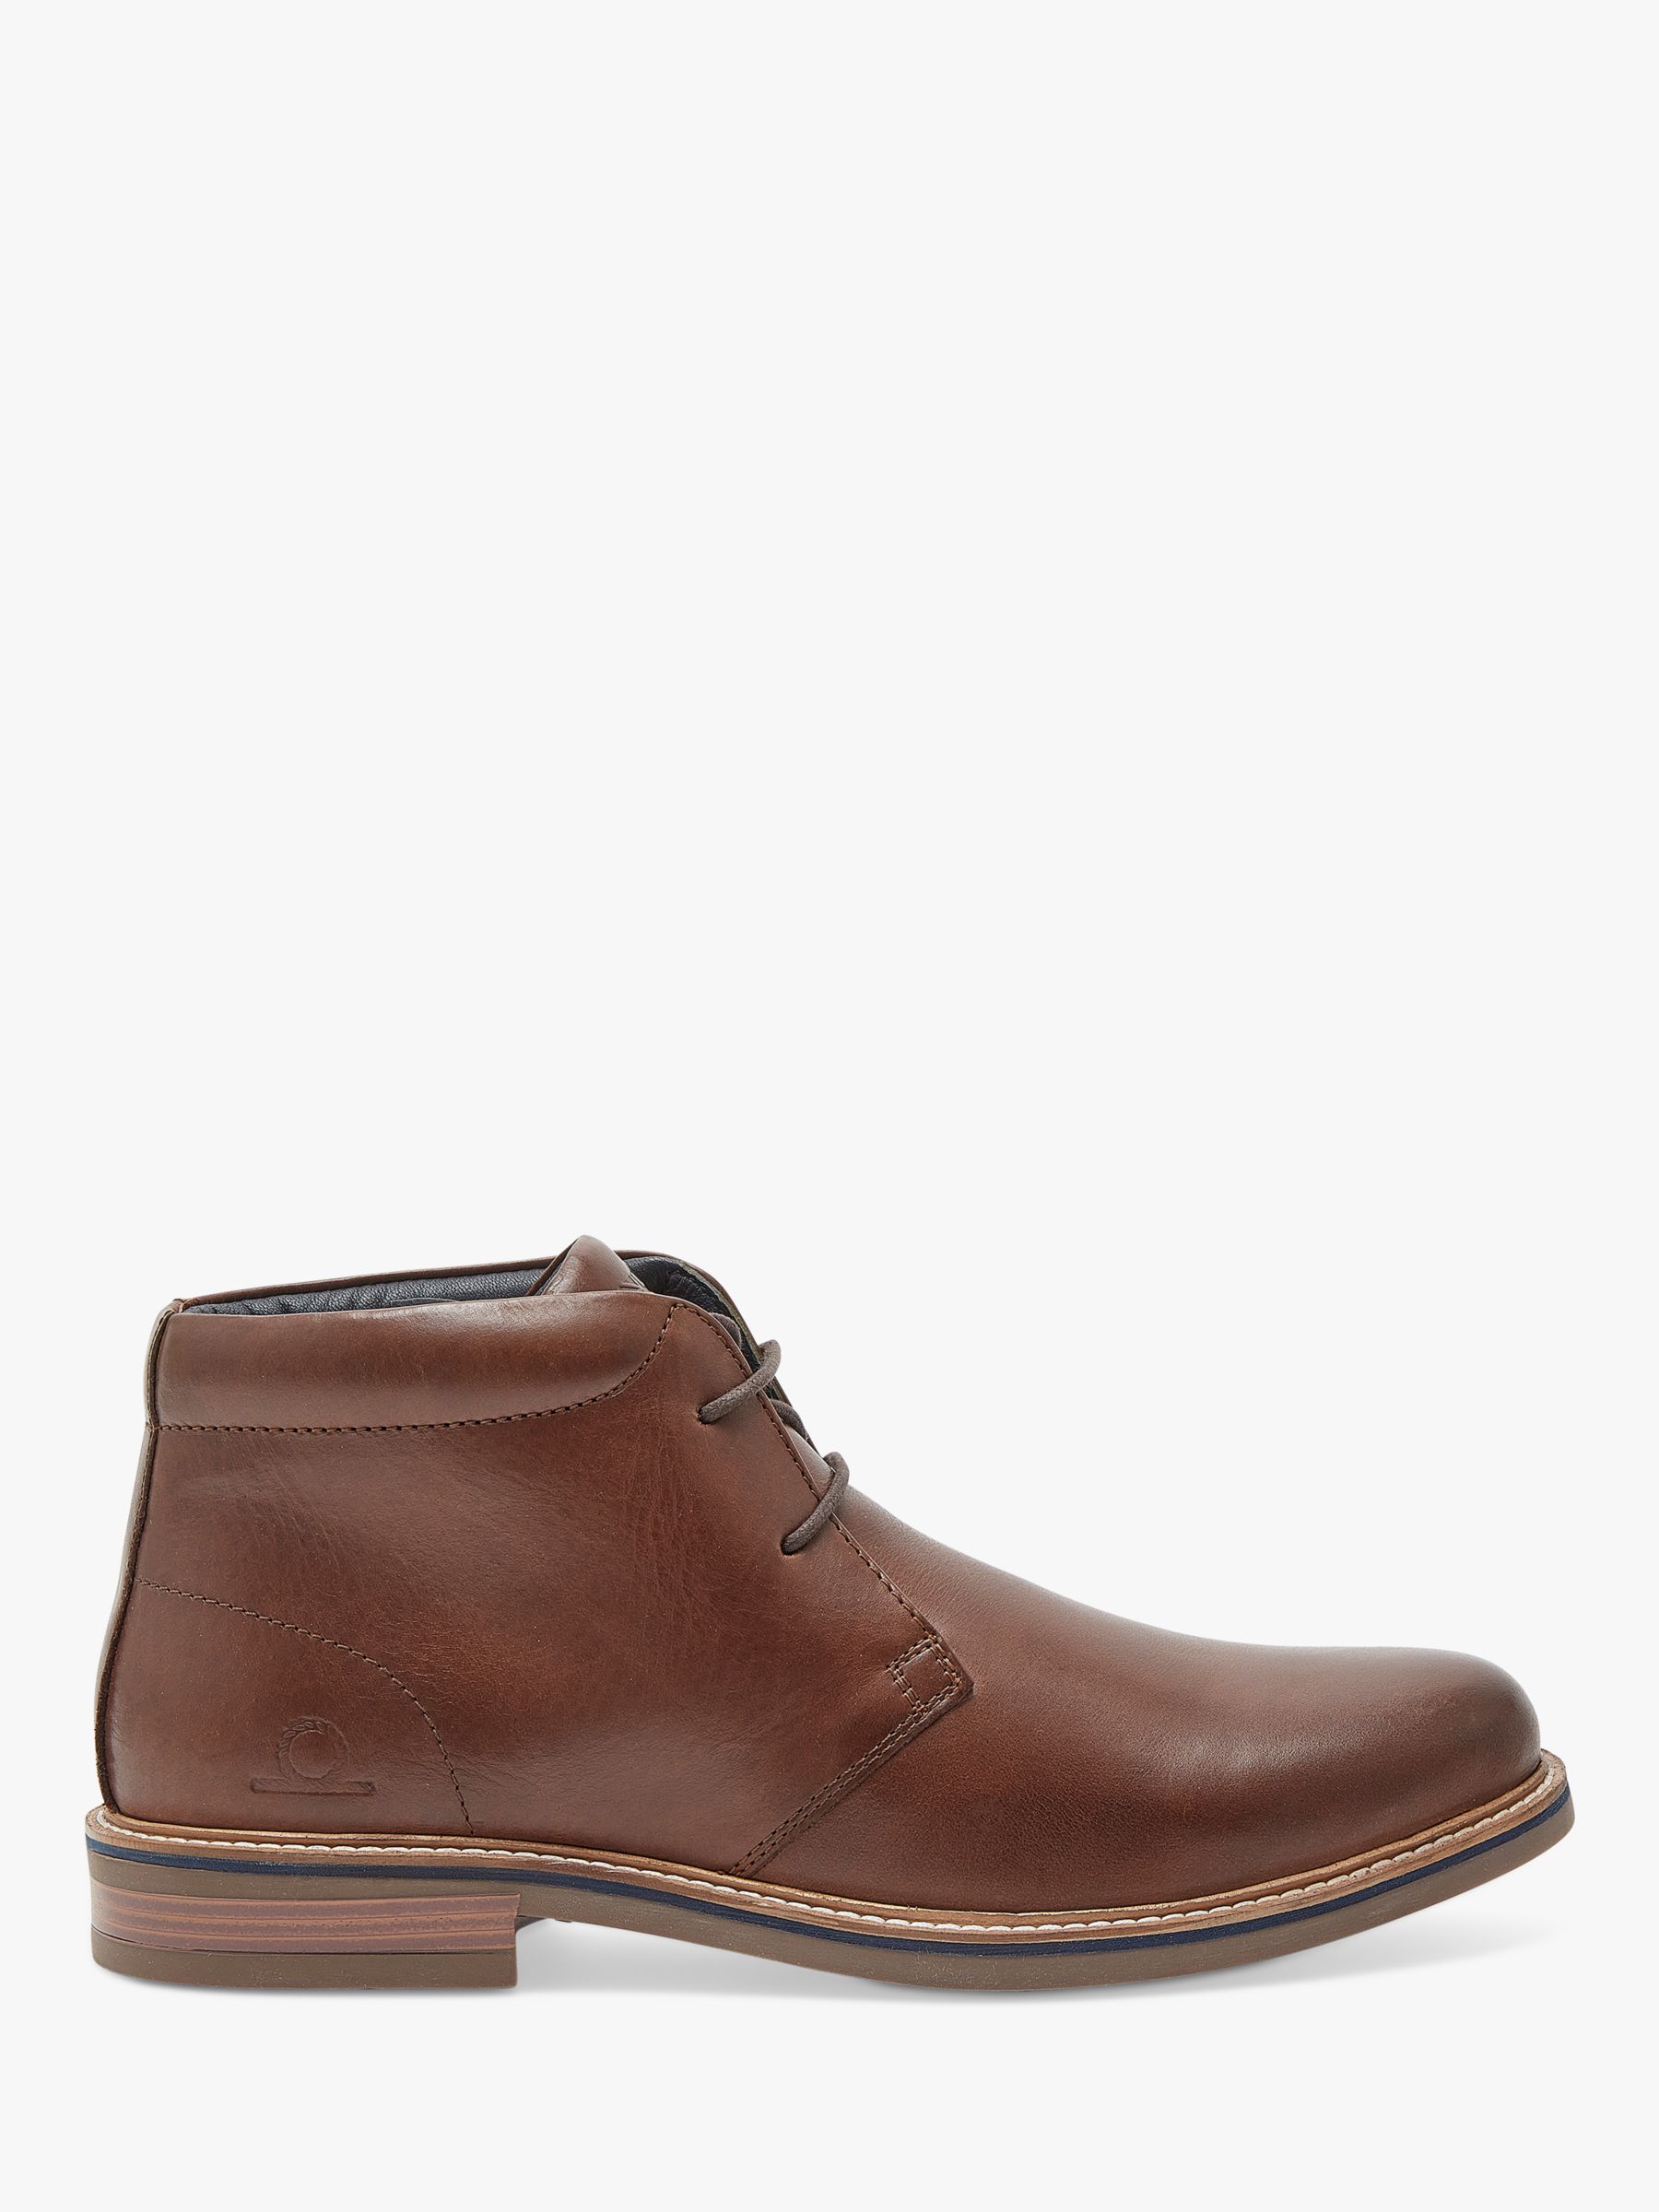 Кожаные ботинки чукка Buckland Chatham, темно коричневый кожаные ботинки чукка buckland chatham тан